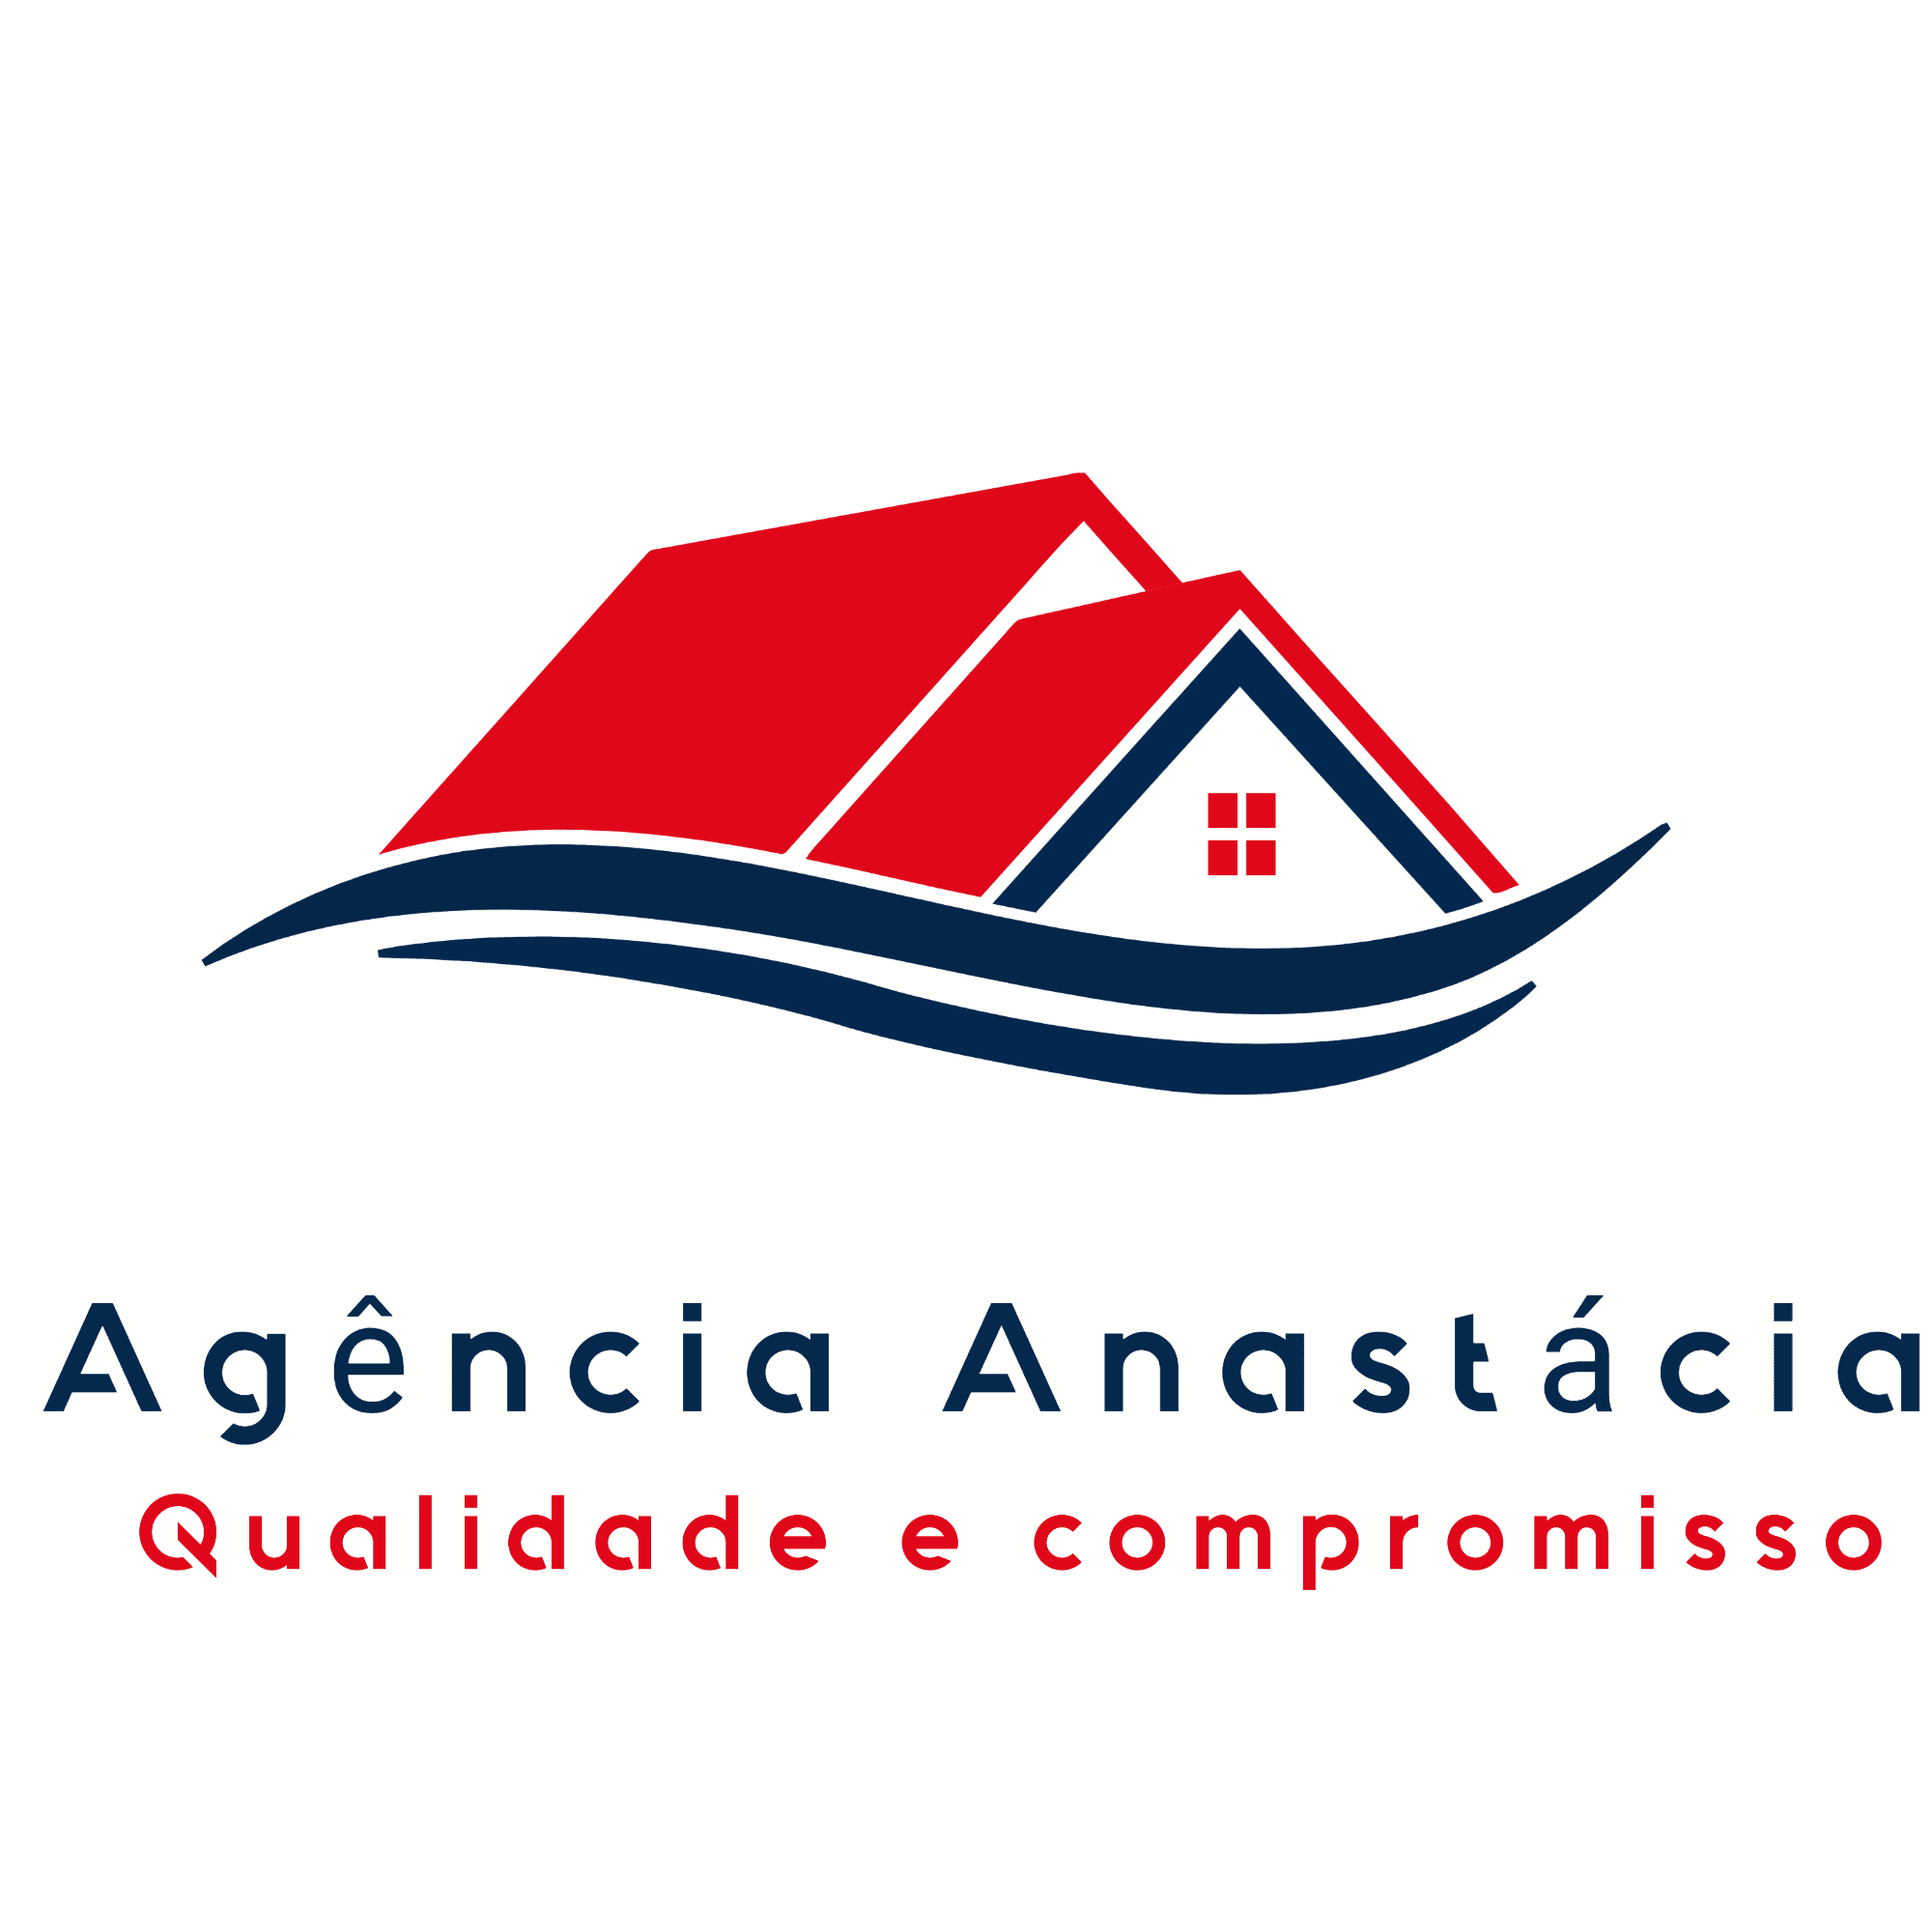 Agência Anastacia